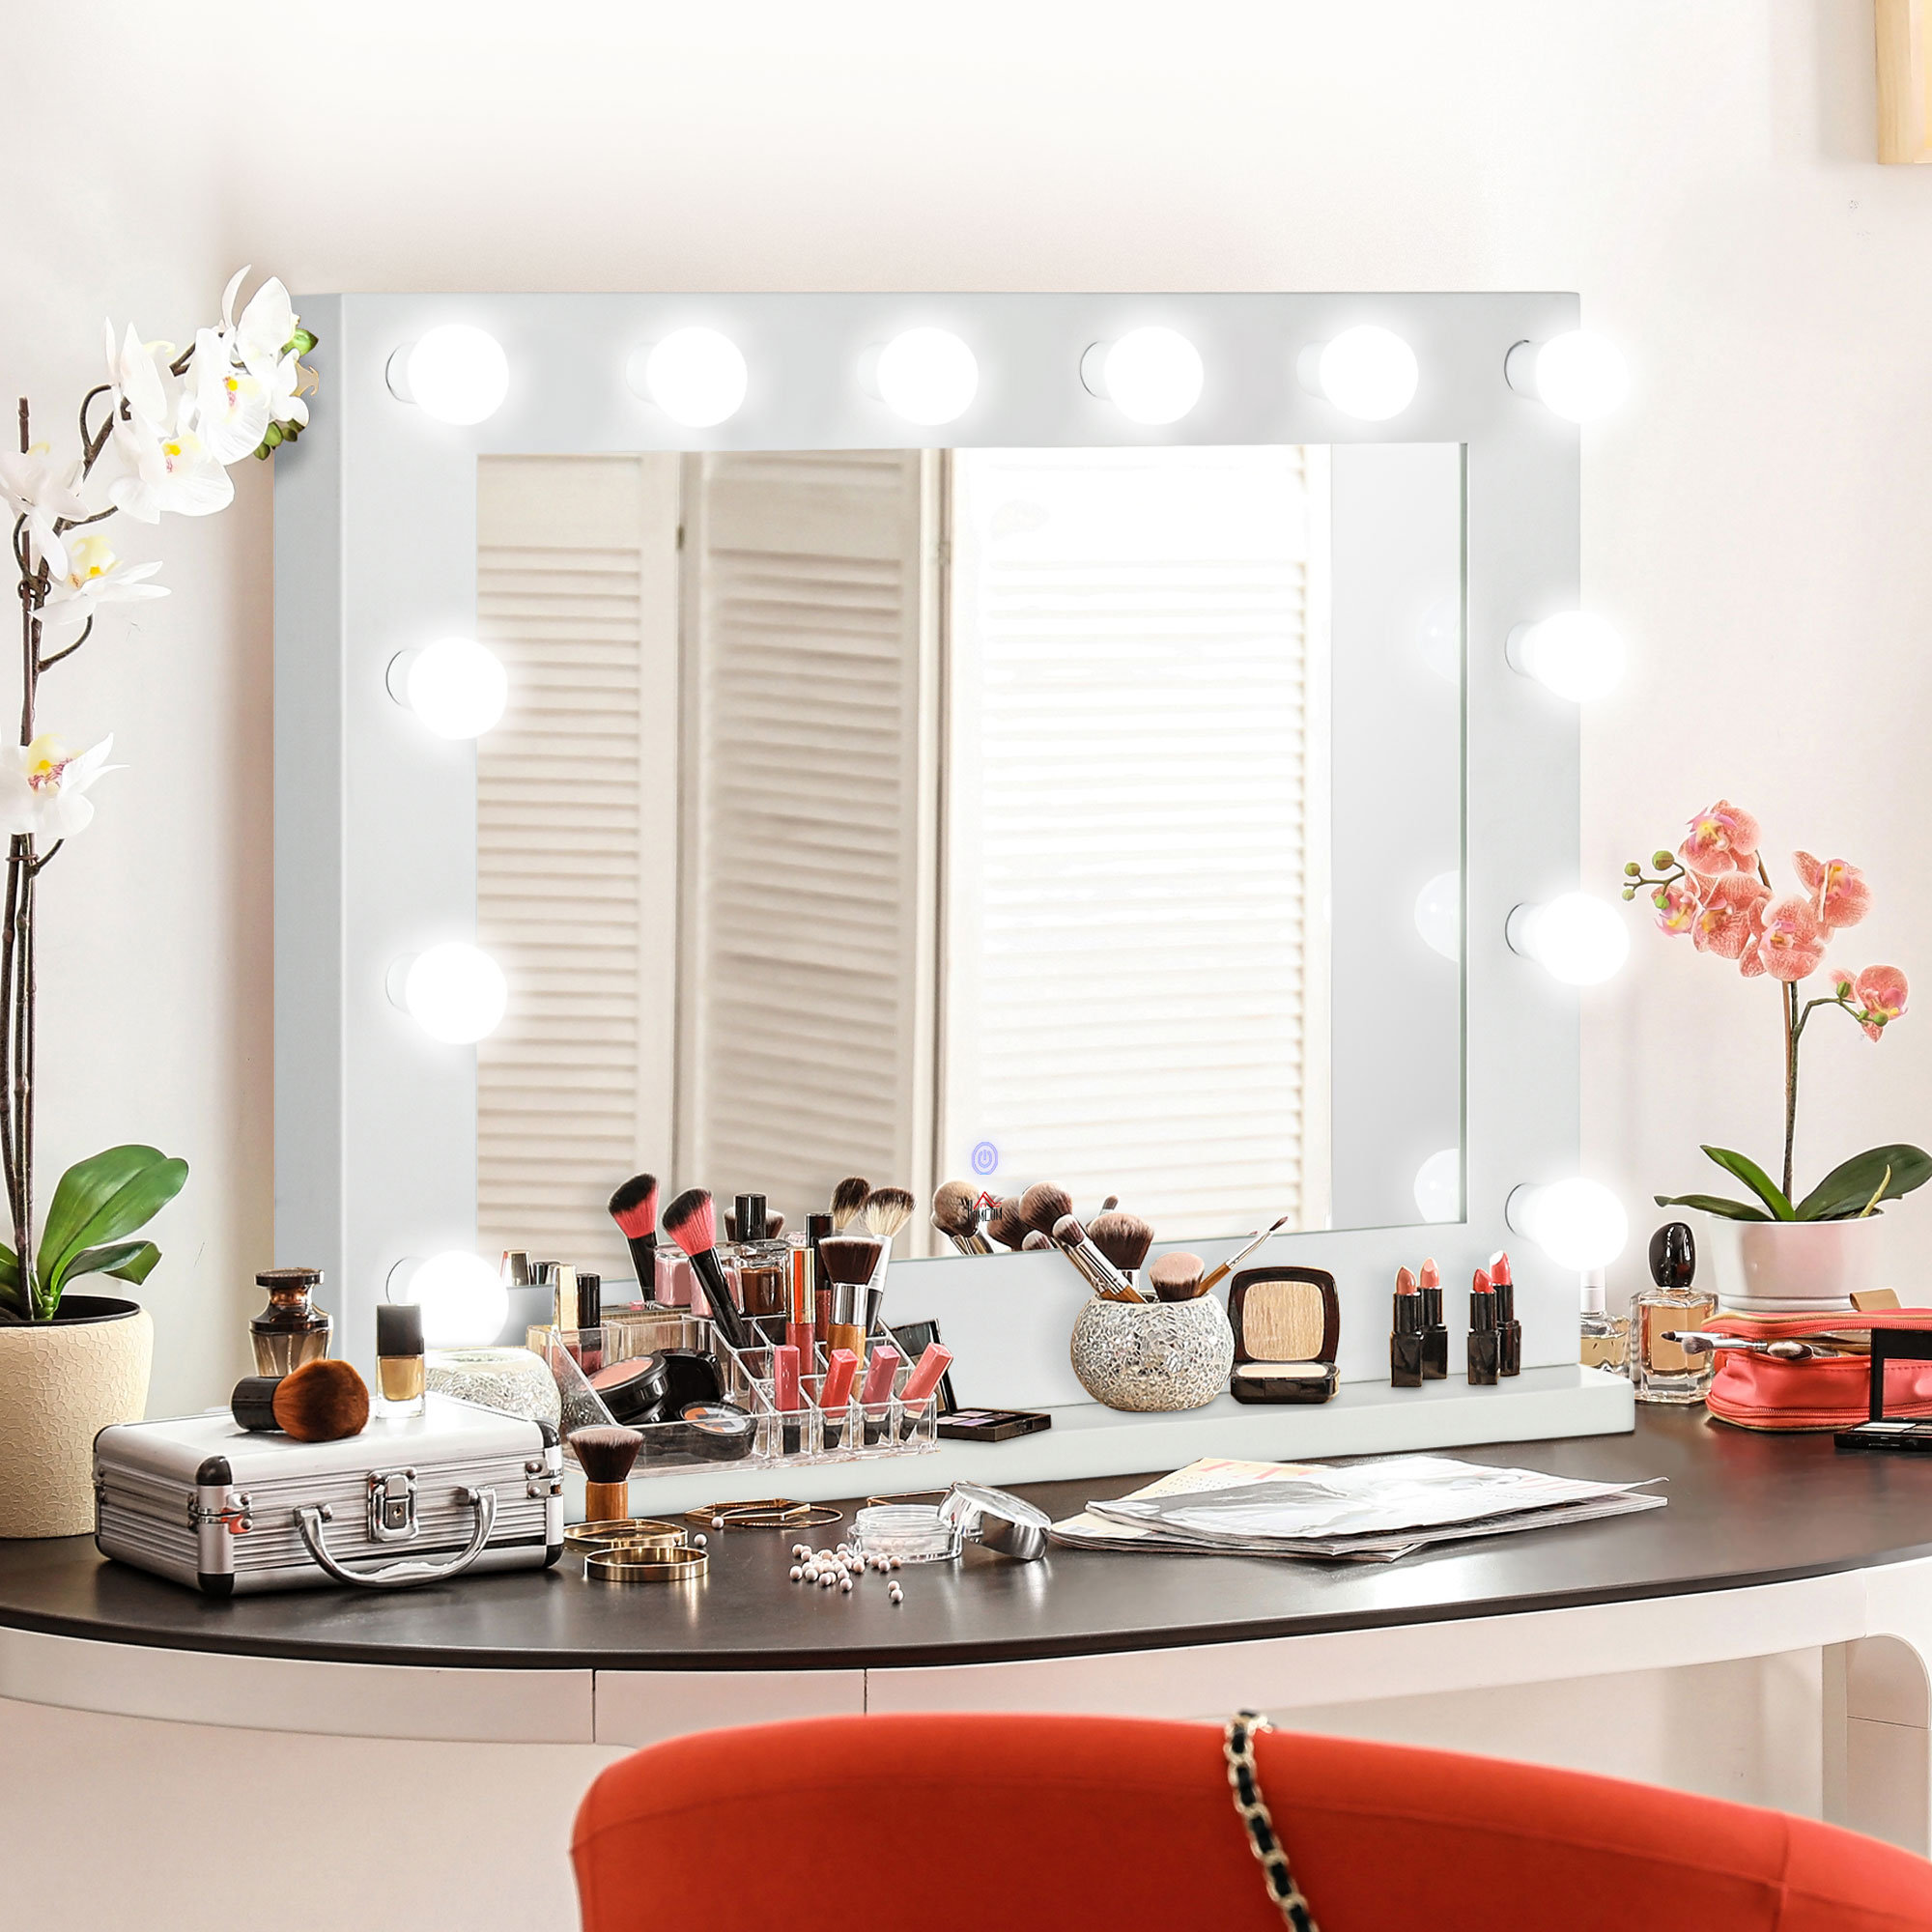  EMKE Hollywood Spiegel mit 3 Lichtfarben, Φ40CM Schminkspiegel  mit Beleuchtung, Smart-Touch Schminktisch Spiegel mit Licht 360° drehbar,  dimmbar und mit Memory-Funktion - Weiß